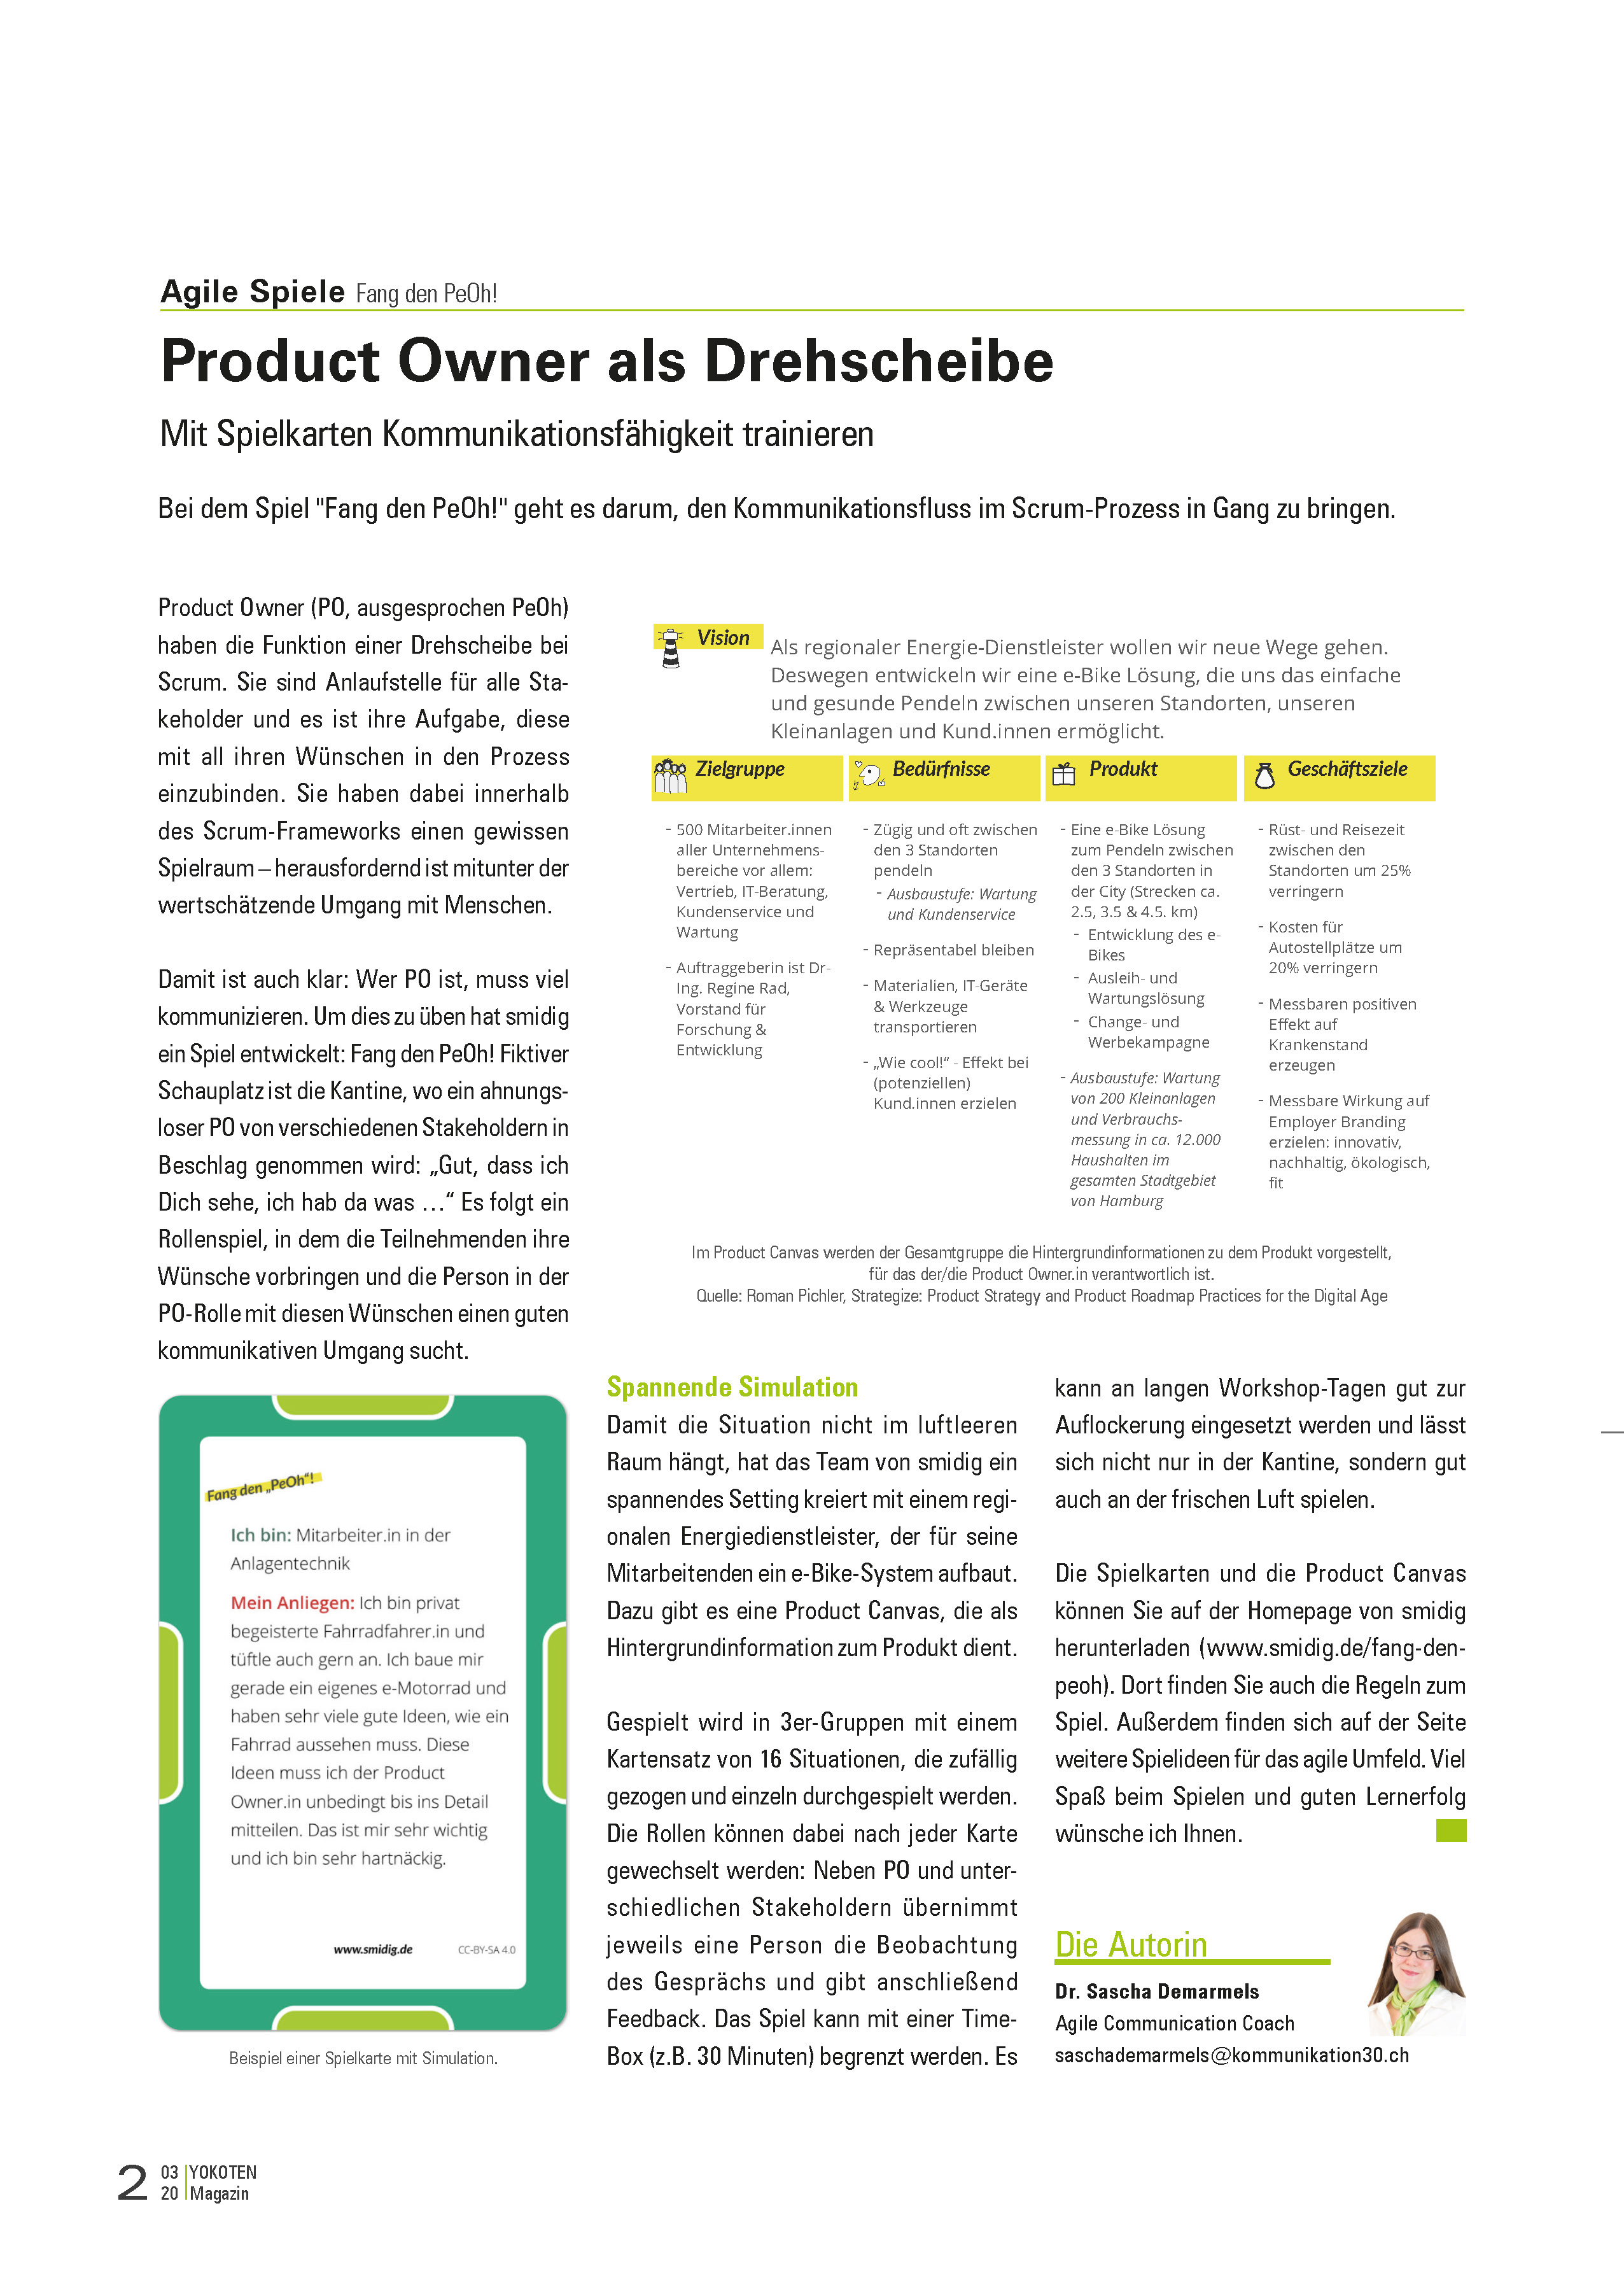 Product Owner als Drehscheibe - Artikel aus Fachmagazin YOKOTEN 2020-03